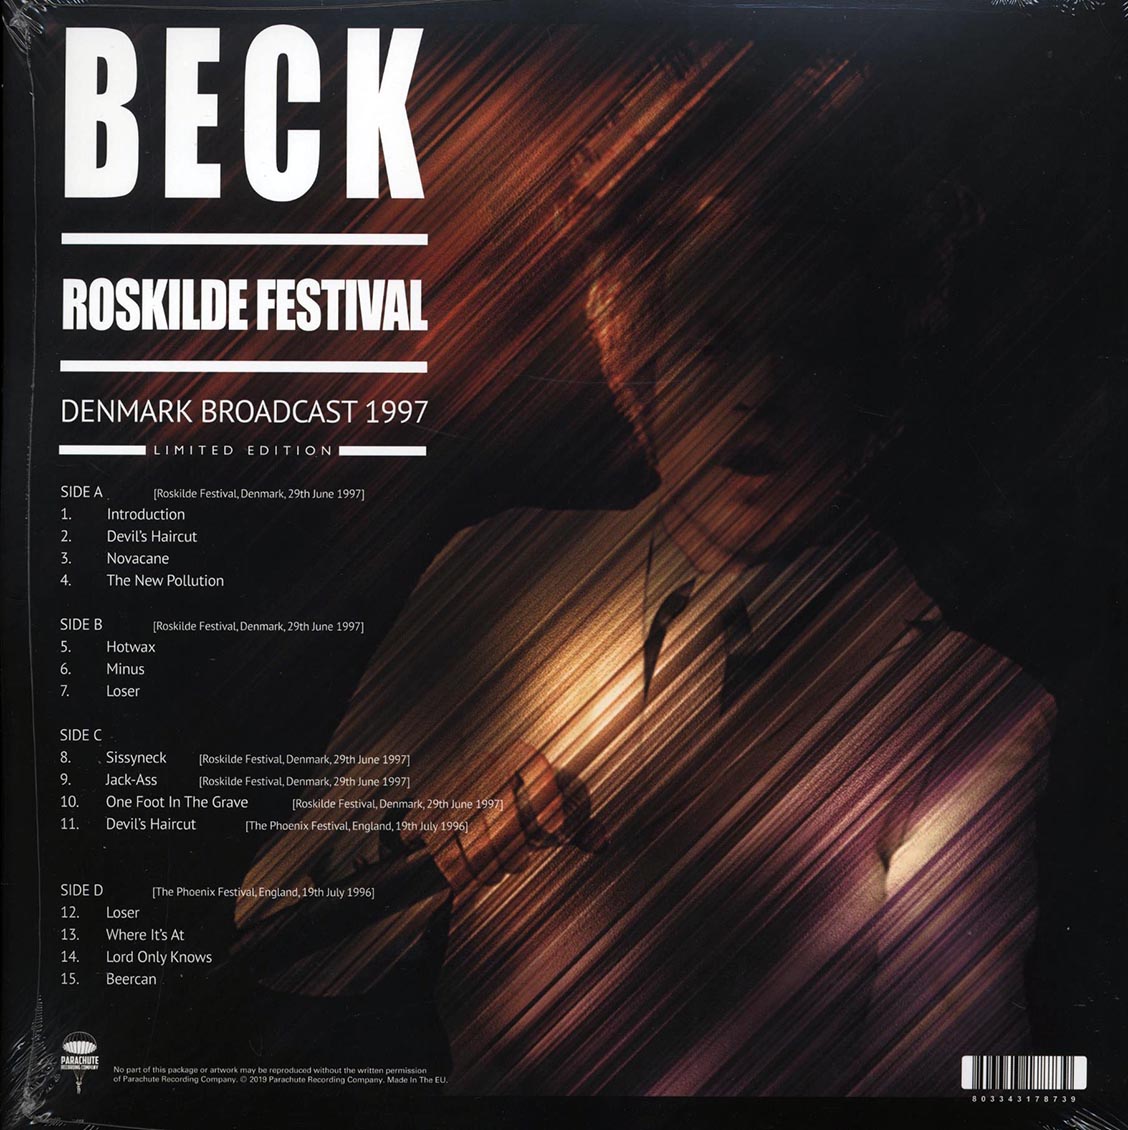 Beck - Roskilde Festival: Denmark Broadcast 1997 (ltd. ed.) (2xLP) (colored vinyl) - Vinyl LP, LP